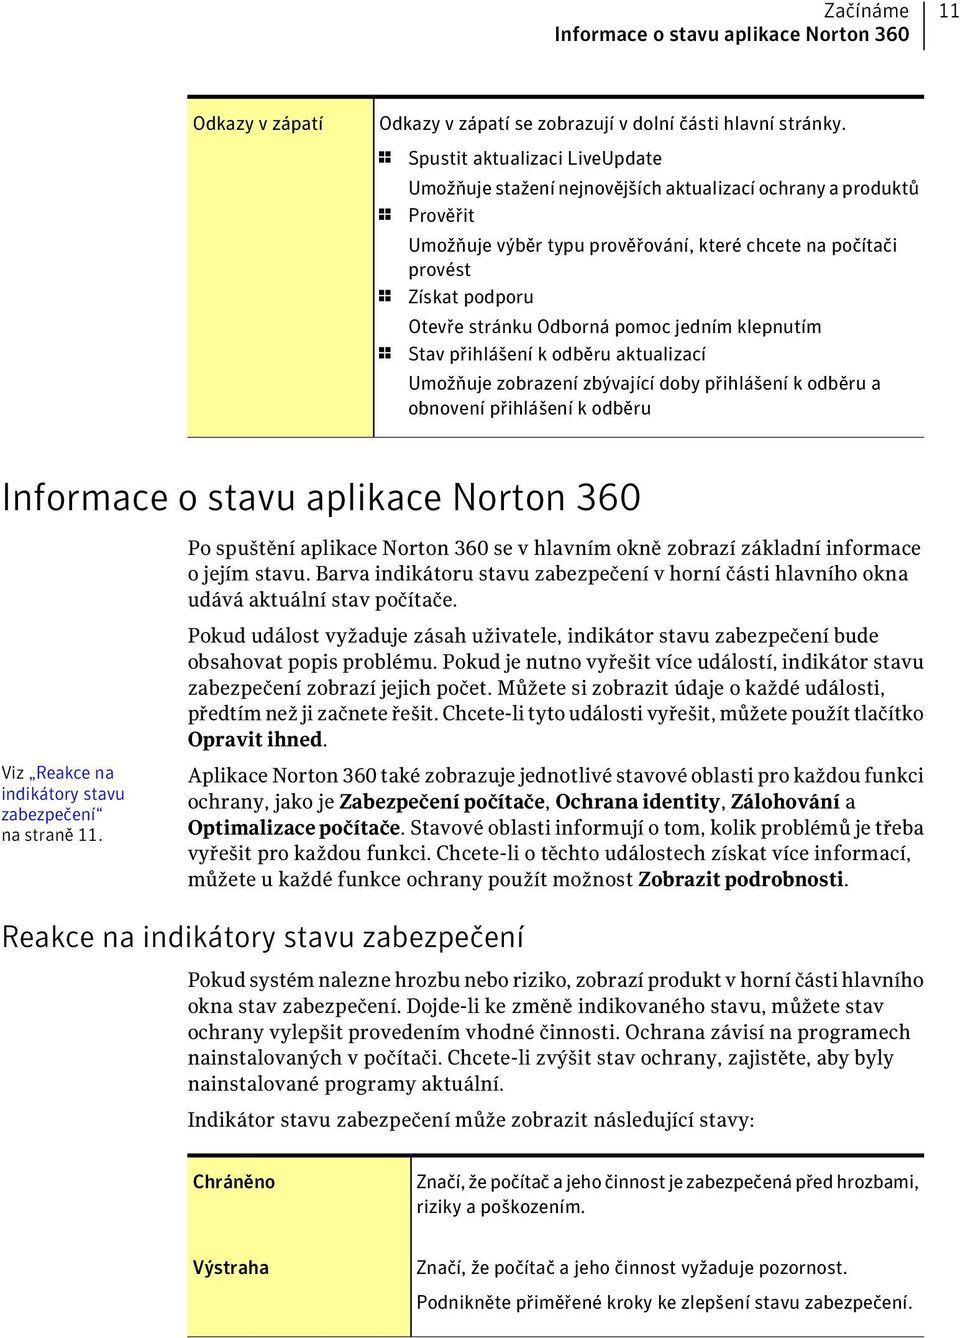 stránku Odborná pomoc jedním klepnutím 1 Stav přihlášení k odběru aktualizací Umožňuje zobrazení zbývající doby přihlášení k odběru a obnovení přihlášení k odběru Informace o stavu aplikace Norton